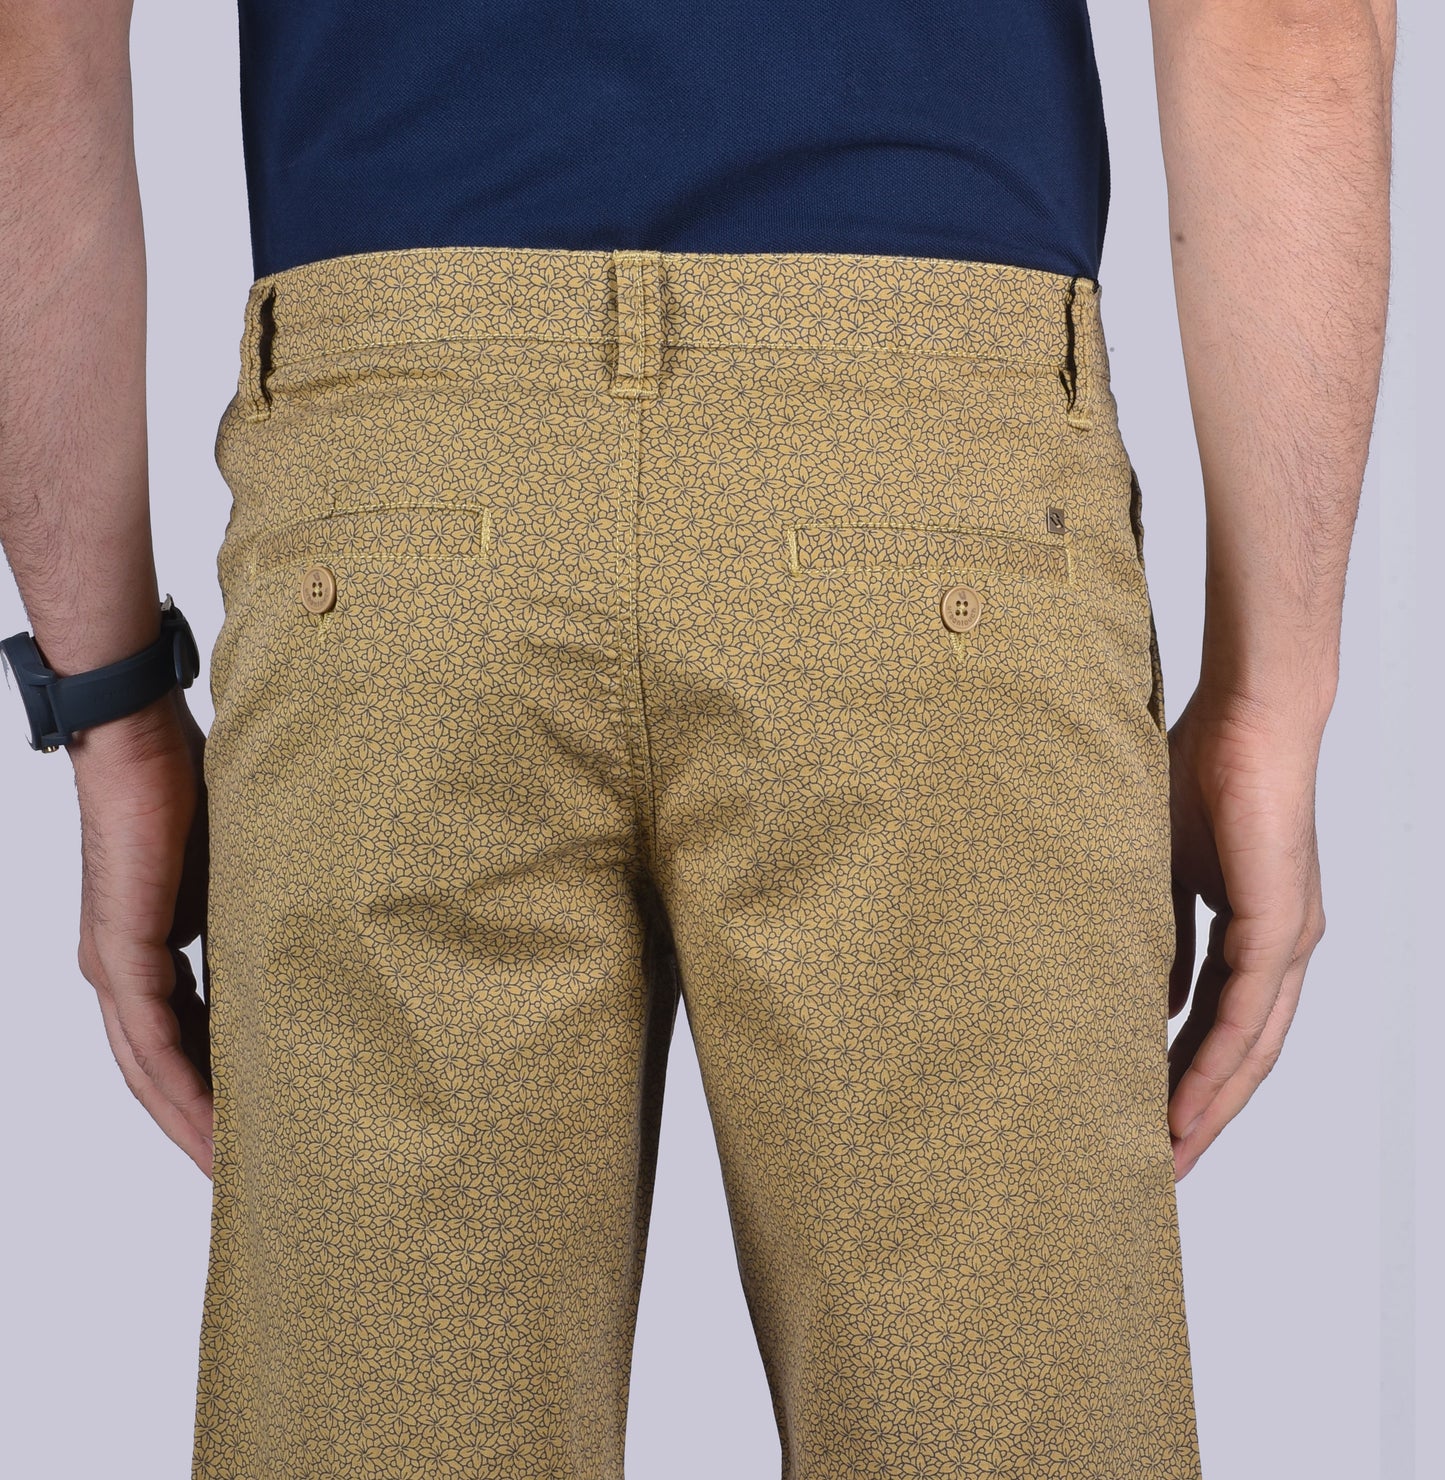 Khaki Uber cool shorts. - urban clothing co.